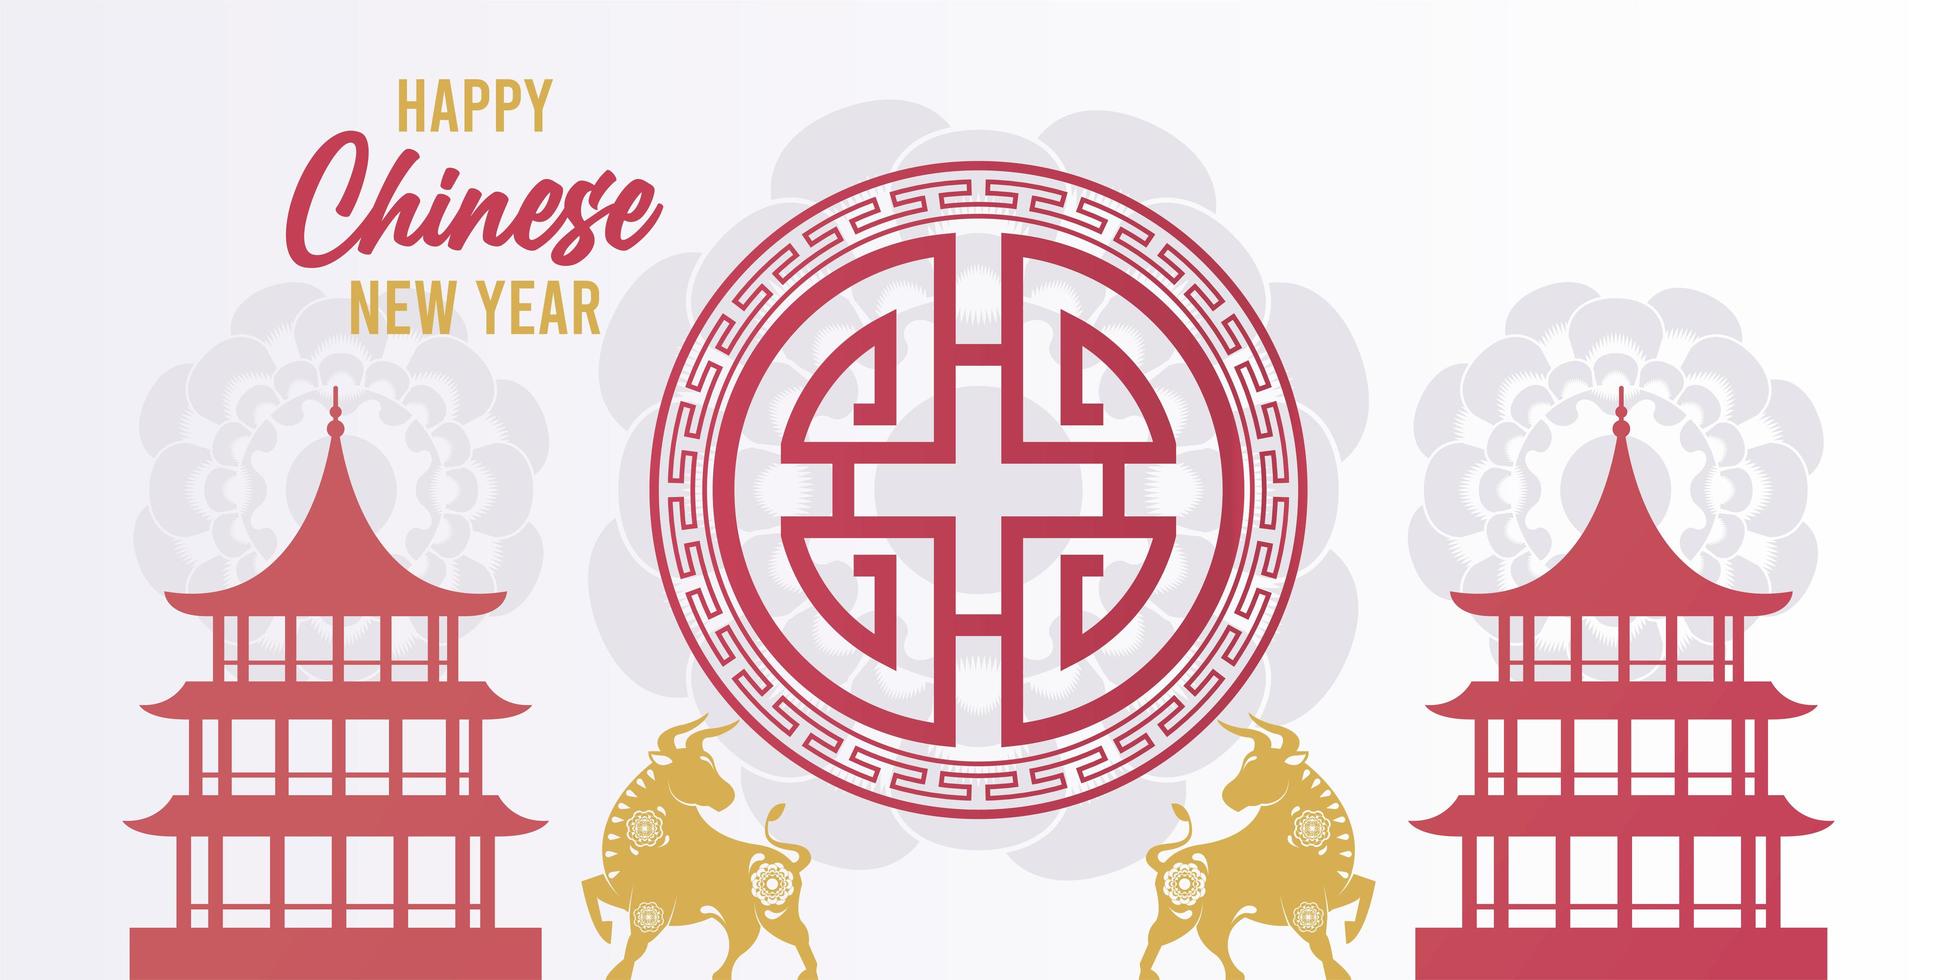 gelukkig chinees nieuwjaar belettering kaart met gouden ossen en kastelen vector